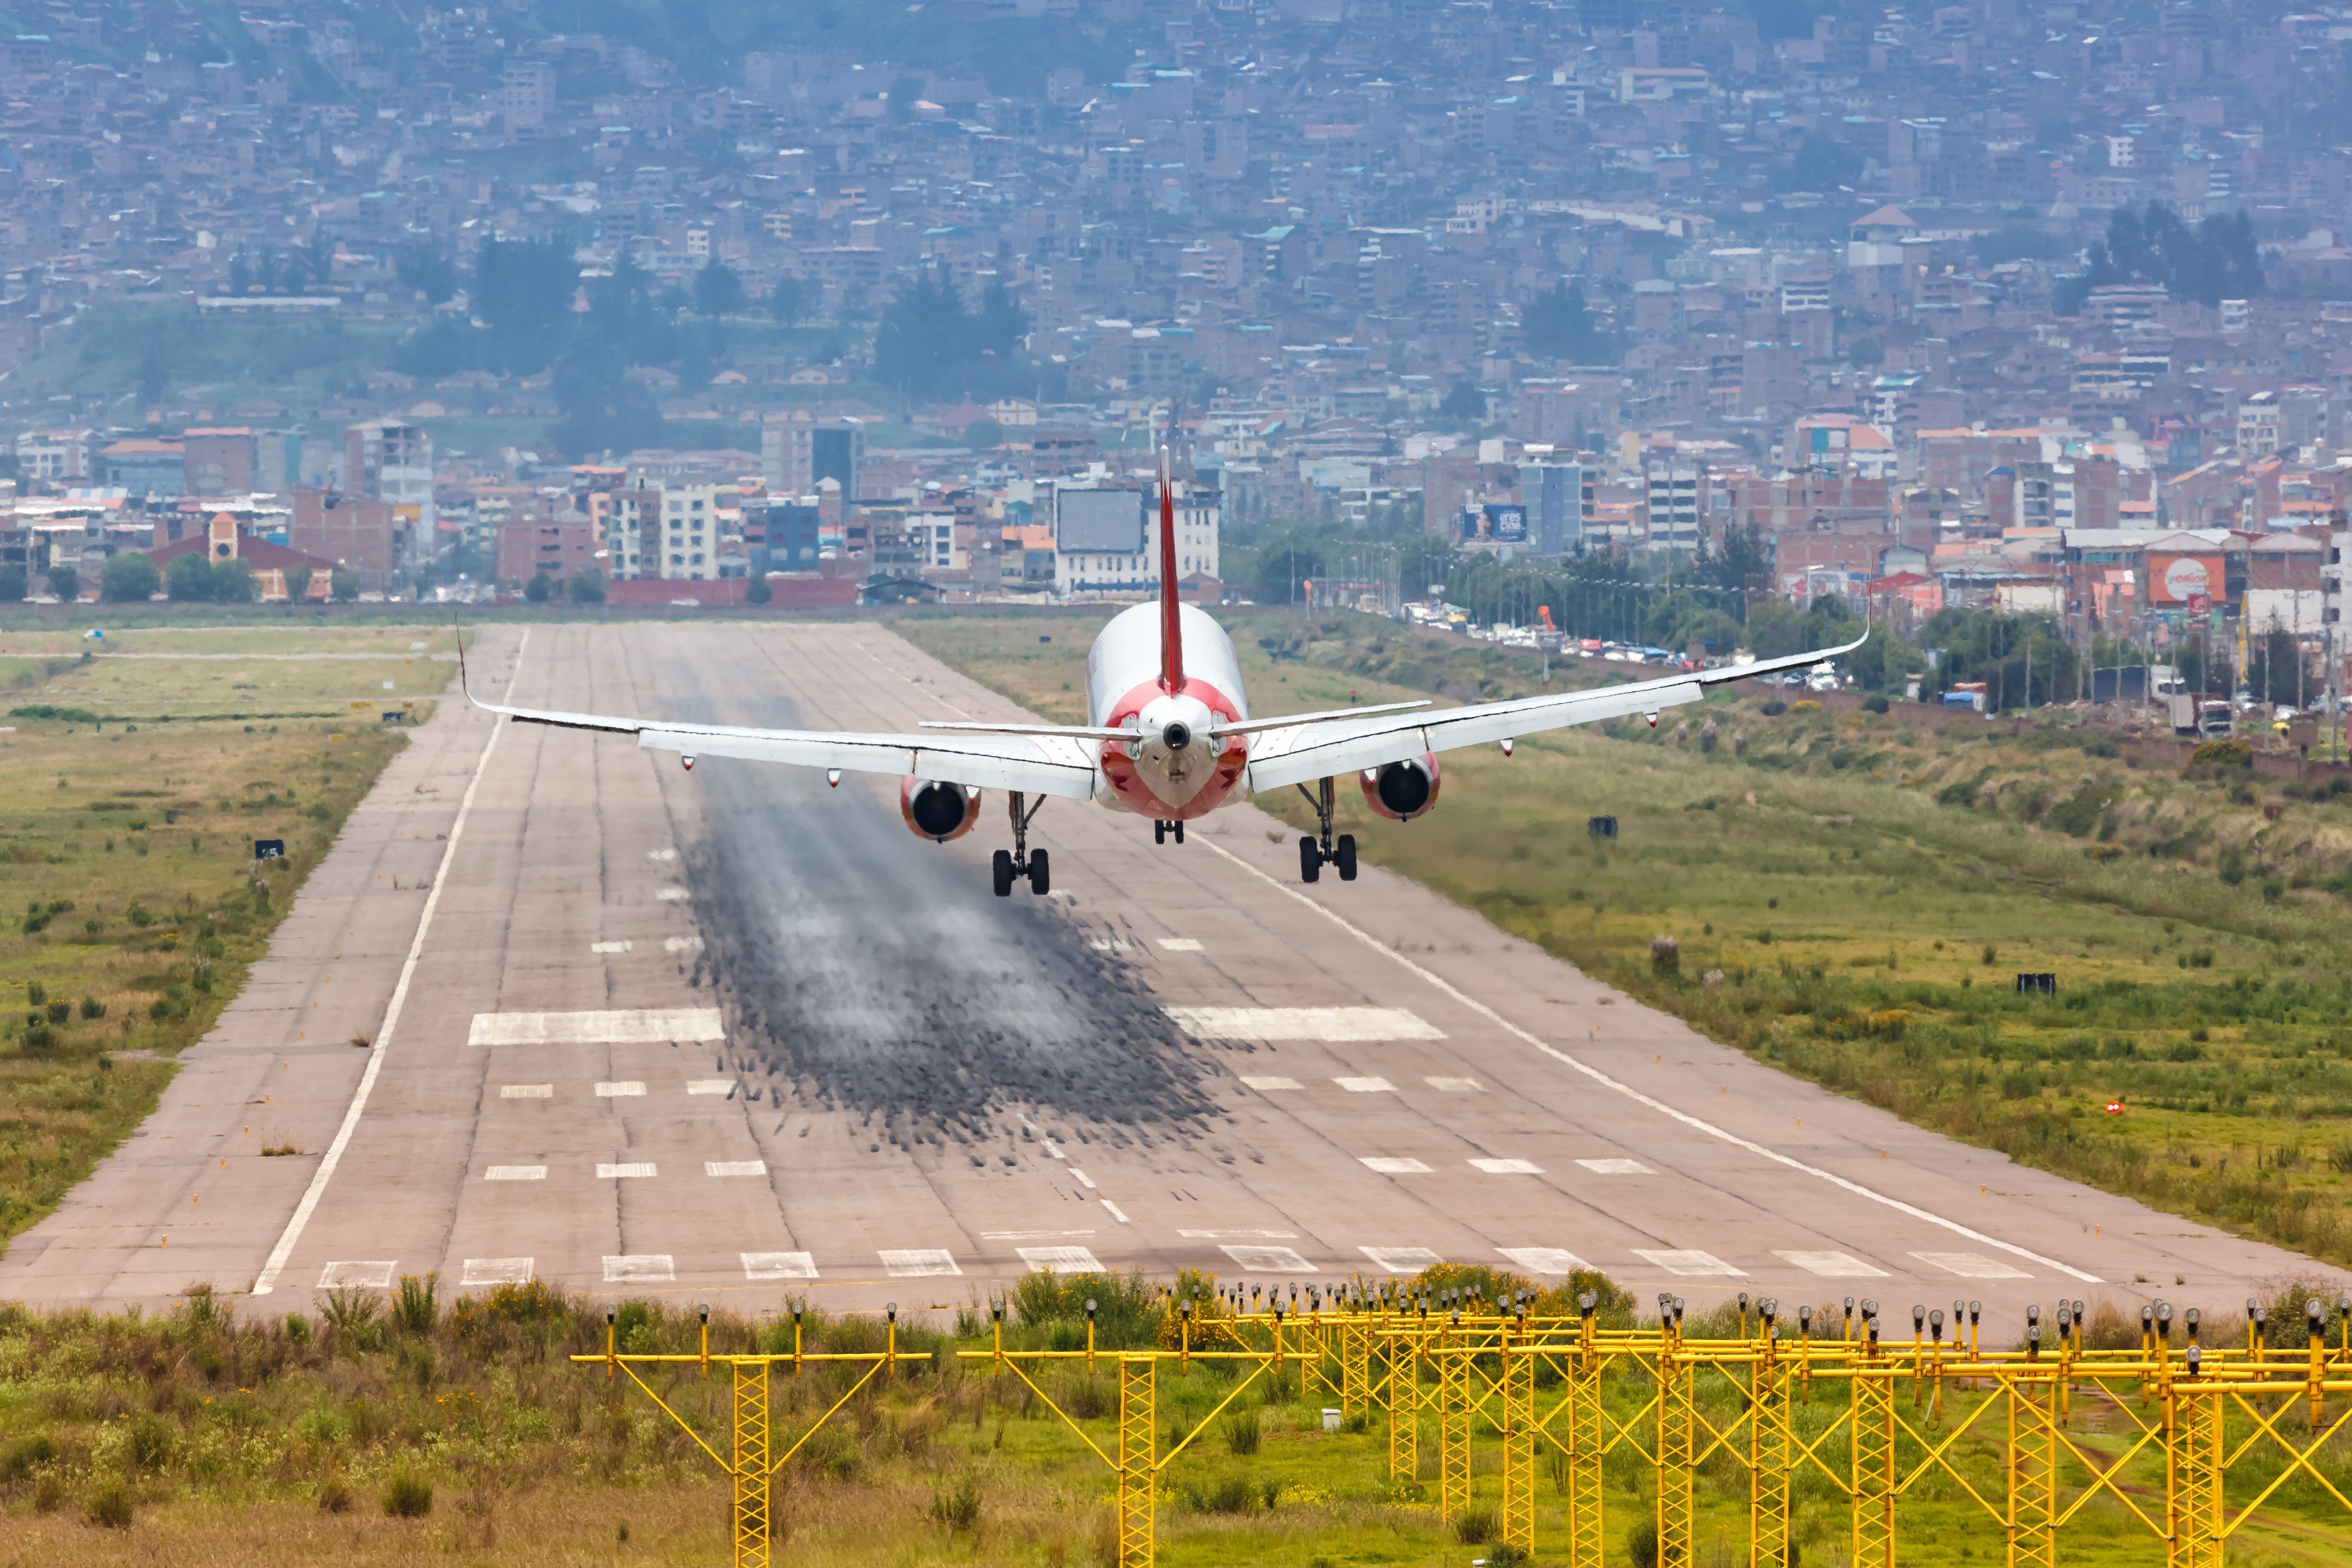 Avianca Airbus A320 airplane at Cusco airport (CUZ) in Peru.